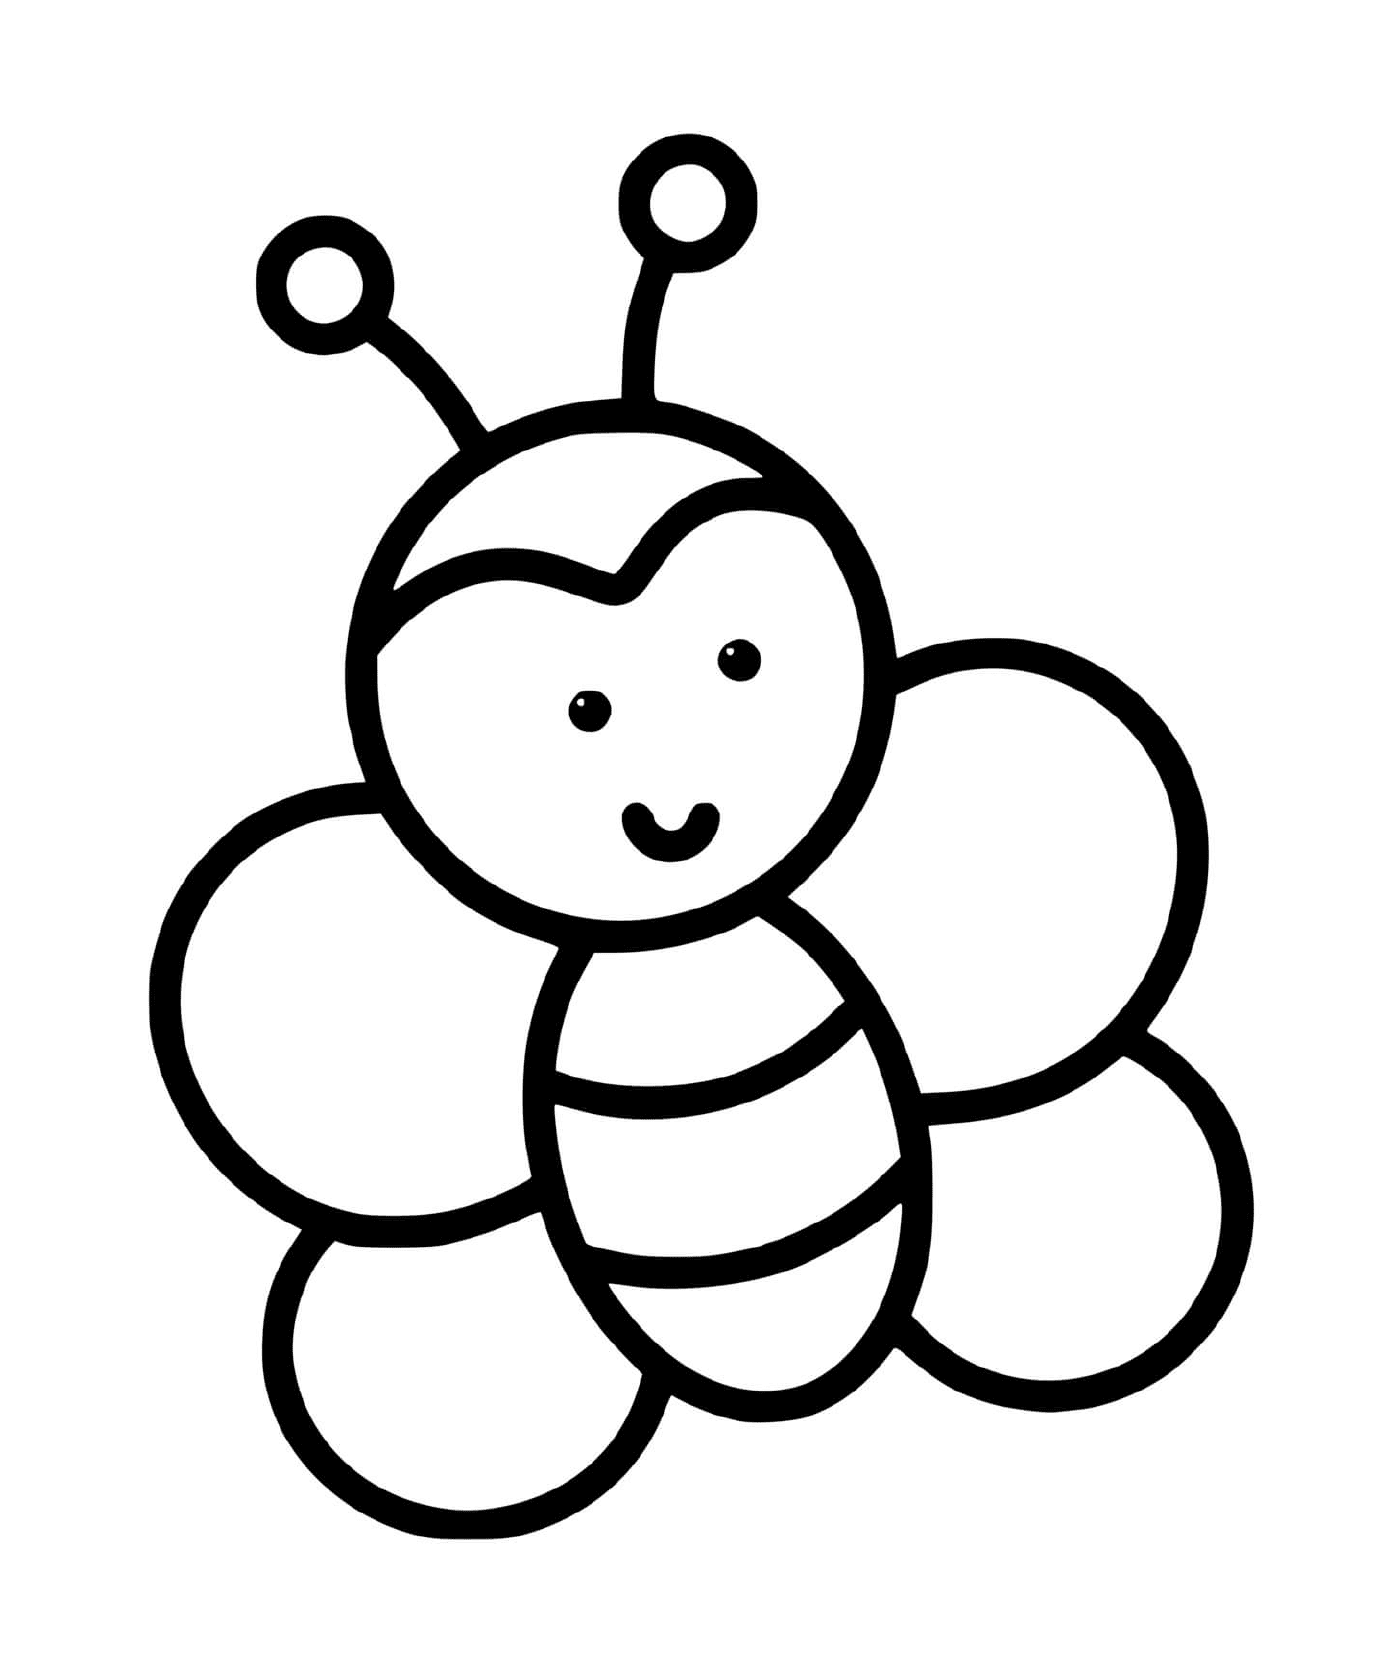  Uma joaninha fácil de desenhar para crianças de 2 anos 